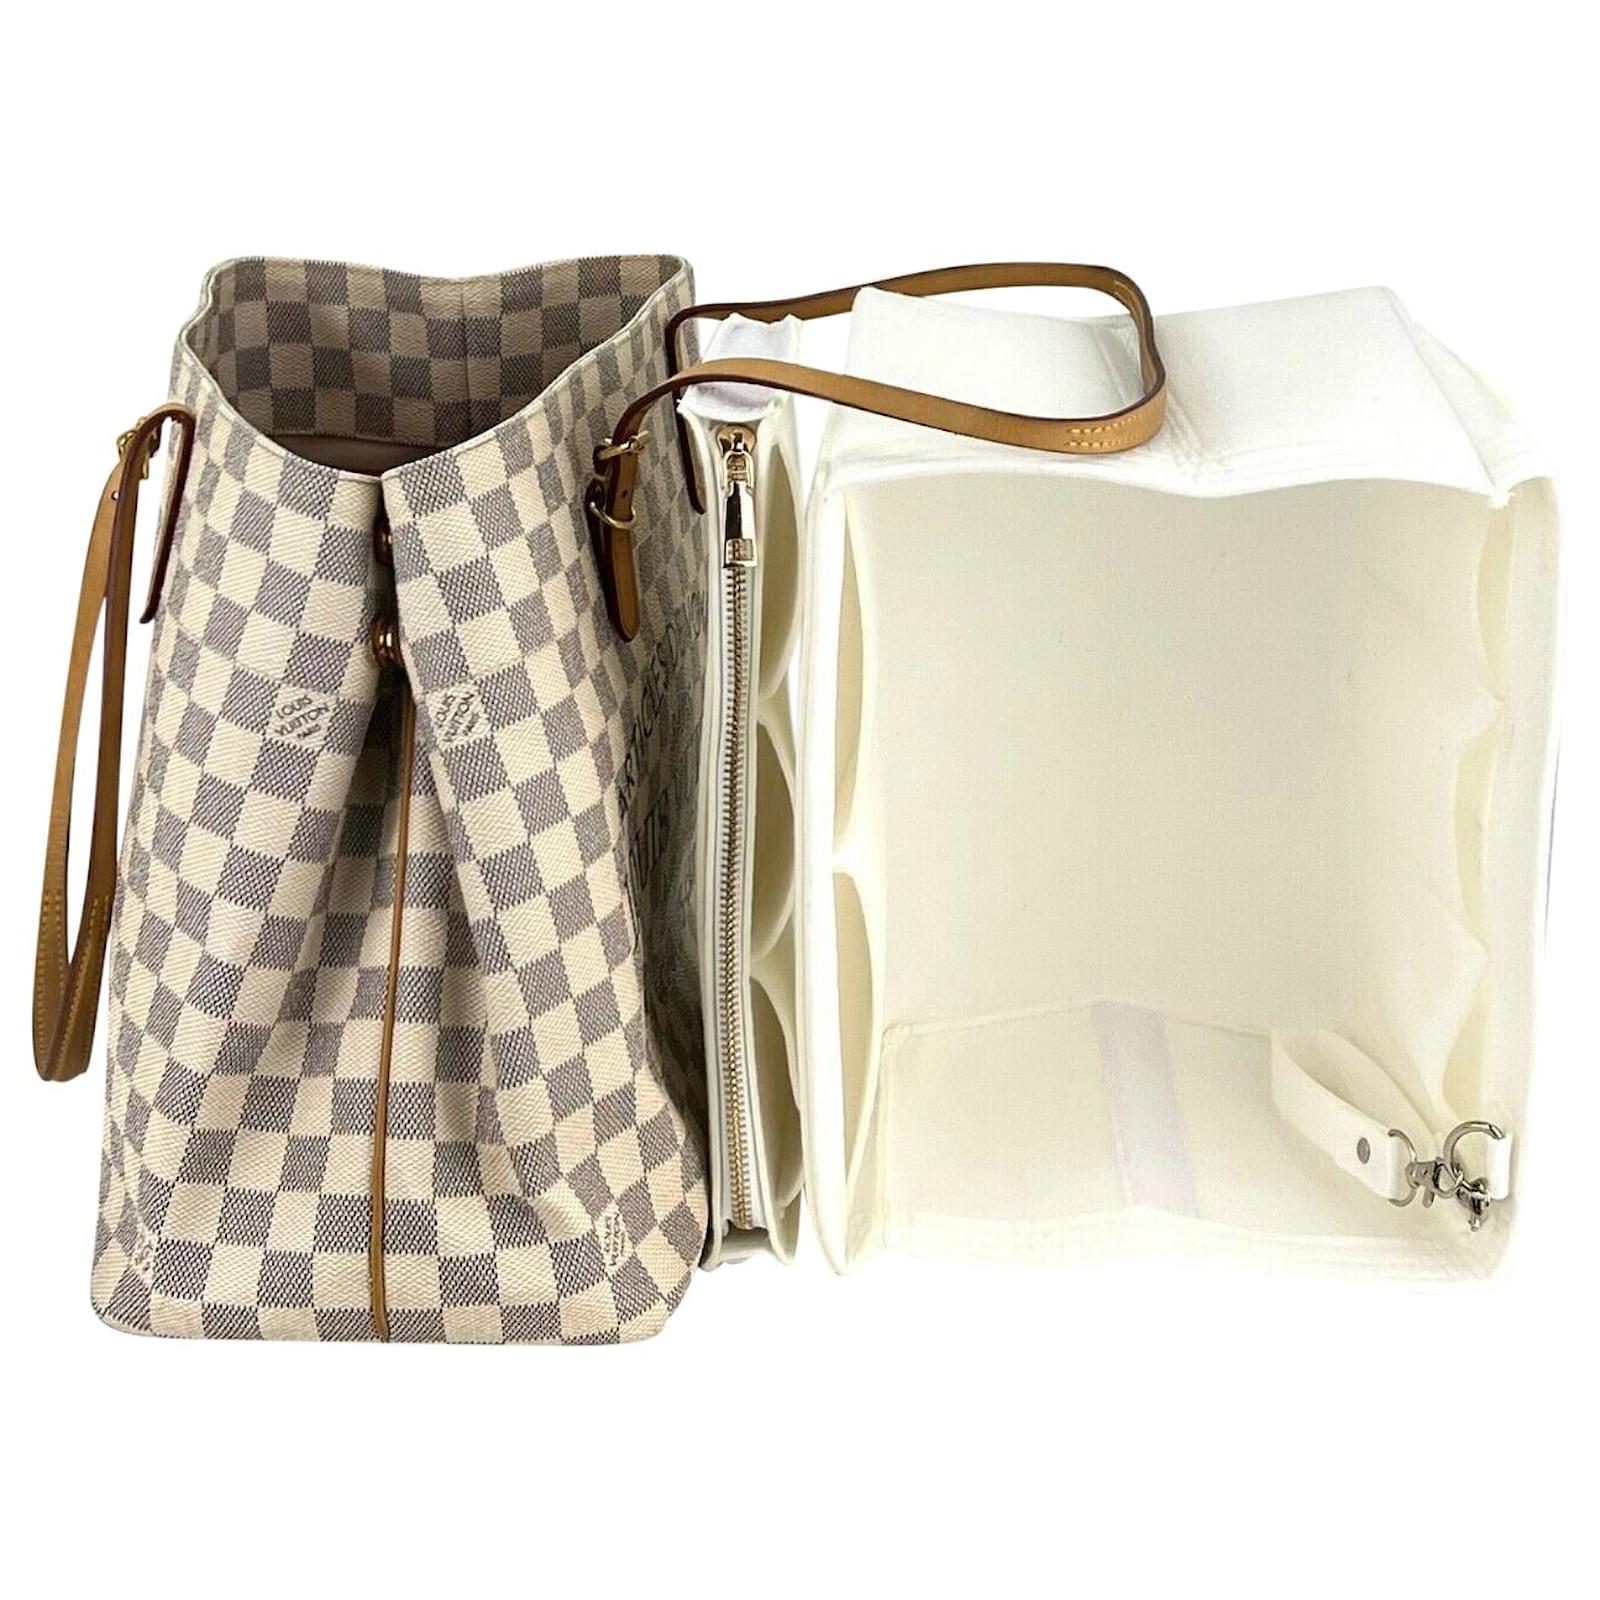 Louis Vuitton Tote Bag Damier Azur Cabas Mm Adventure Mm Shoulder